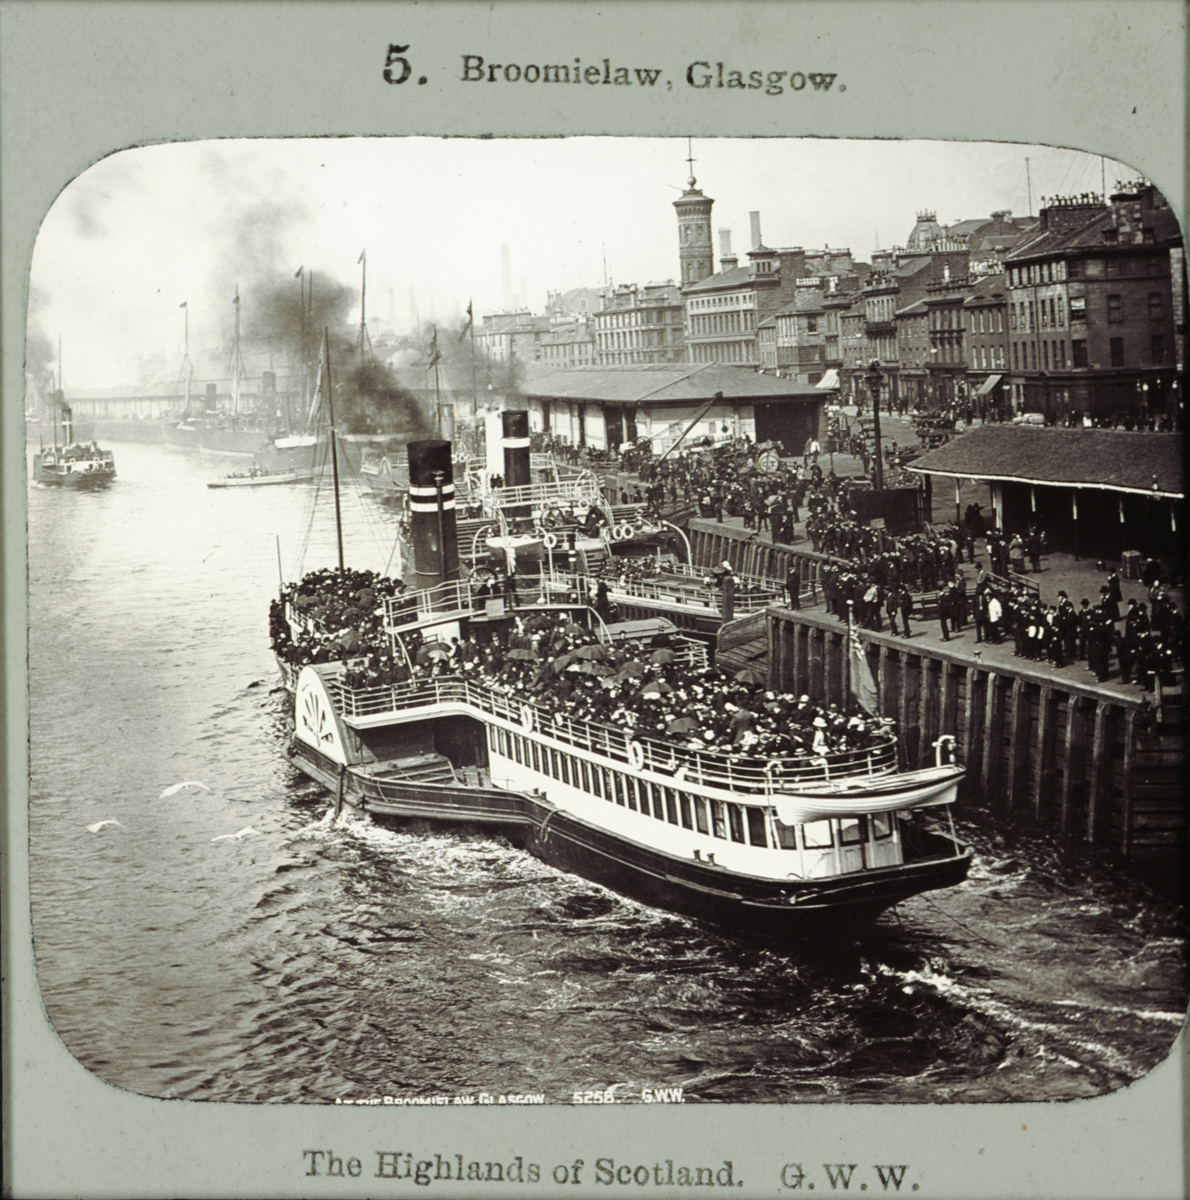 Titeln "Broomielaw, Glasgow". Fotografiet föreställer en hjulångare som proppfylld med passagerare lägger ut från kajen.
Ur serien, "The Highlands of Scotland".